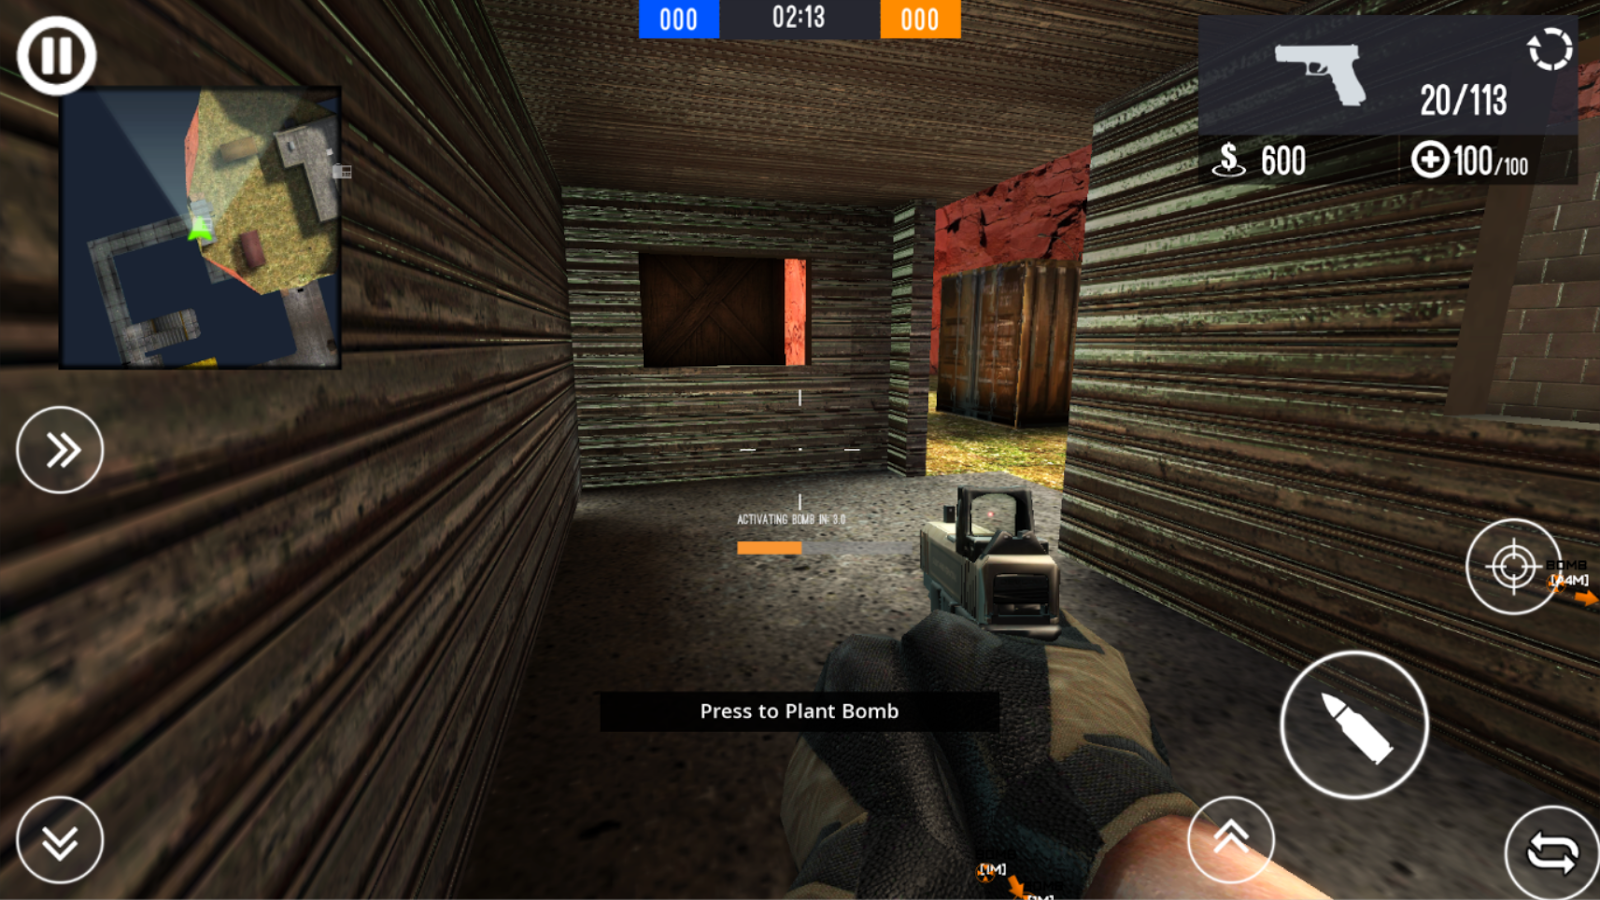 Download Game Bullet Strike Battleground Mod Apk Eagleproduct